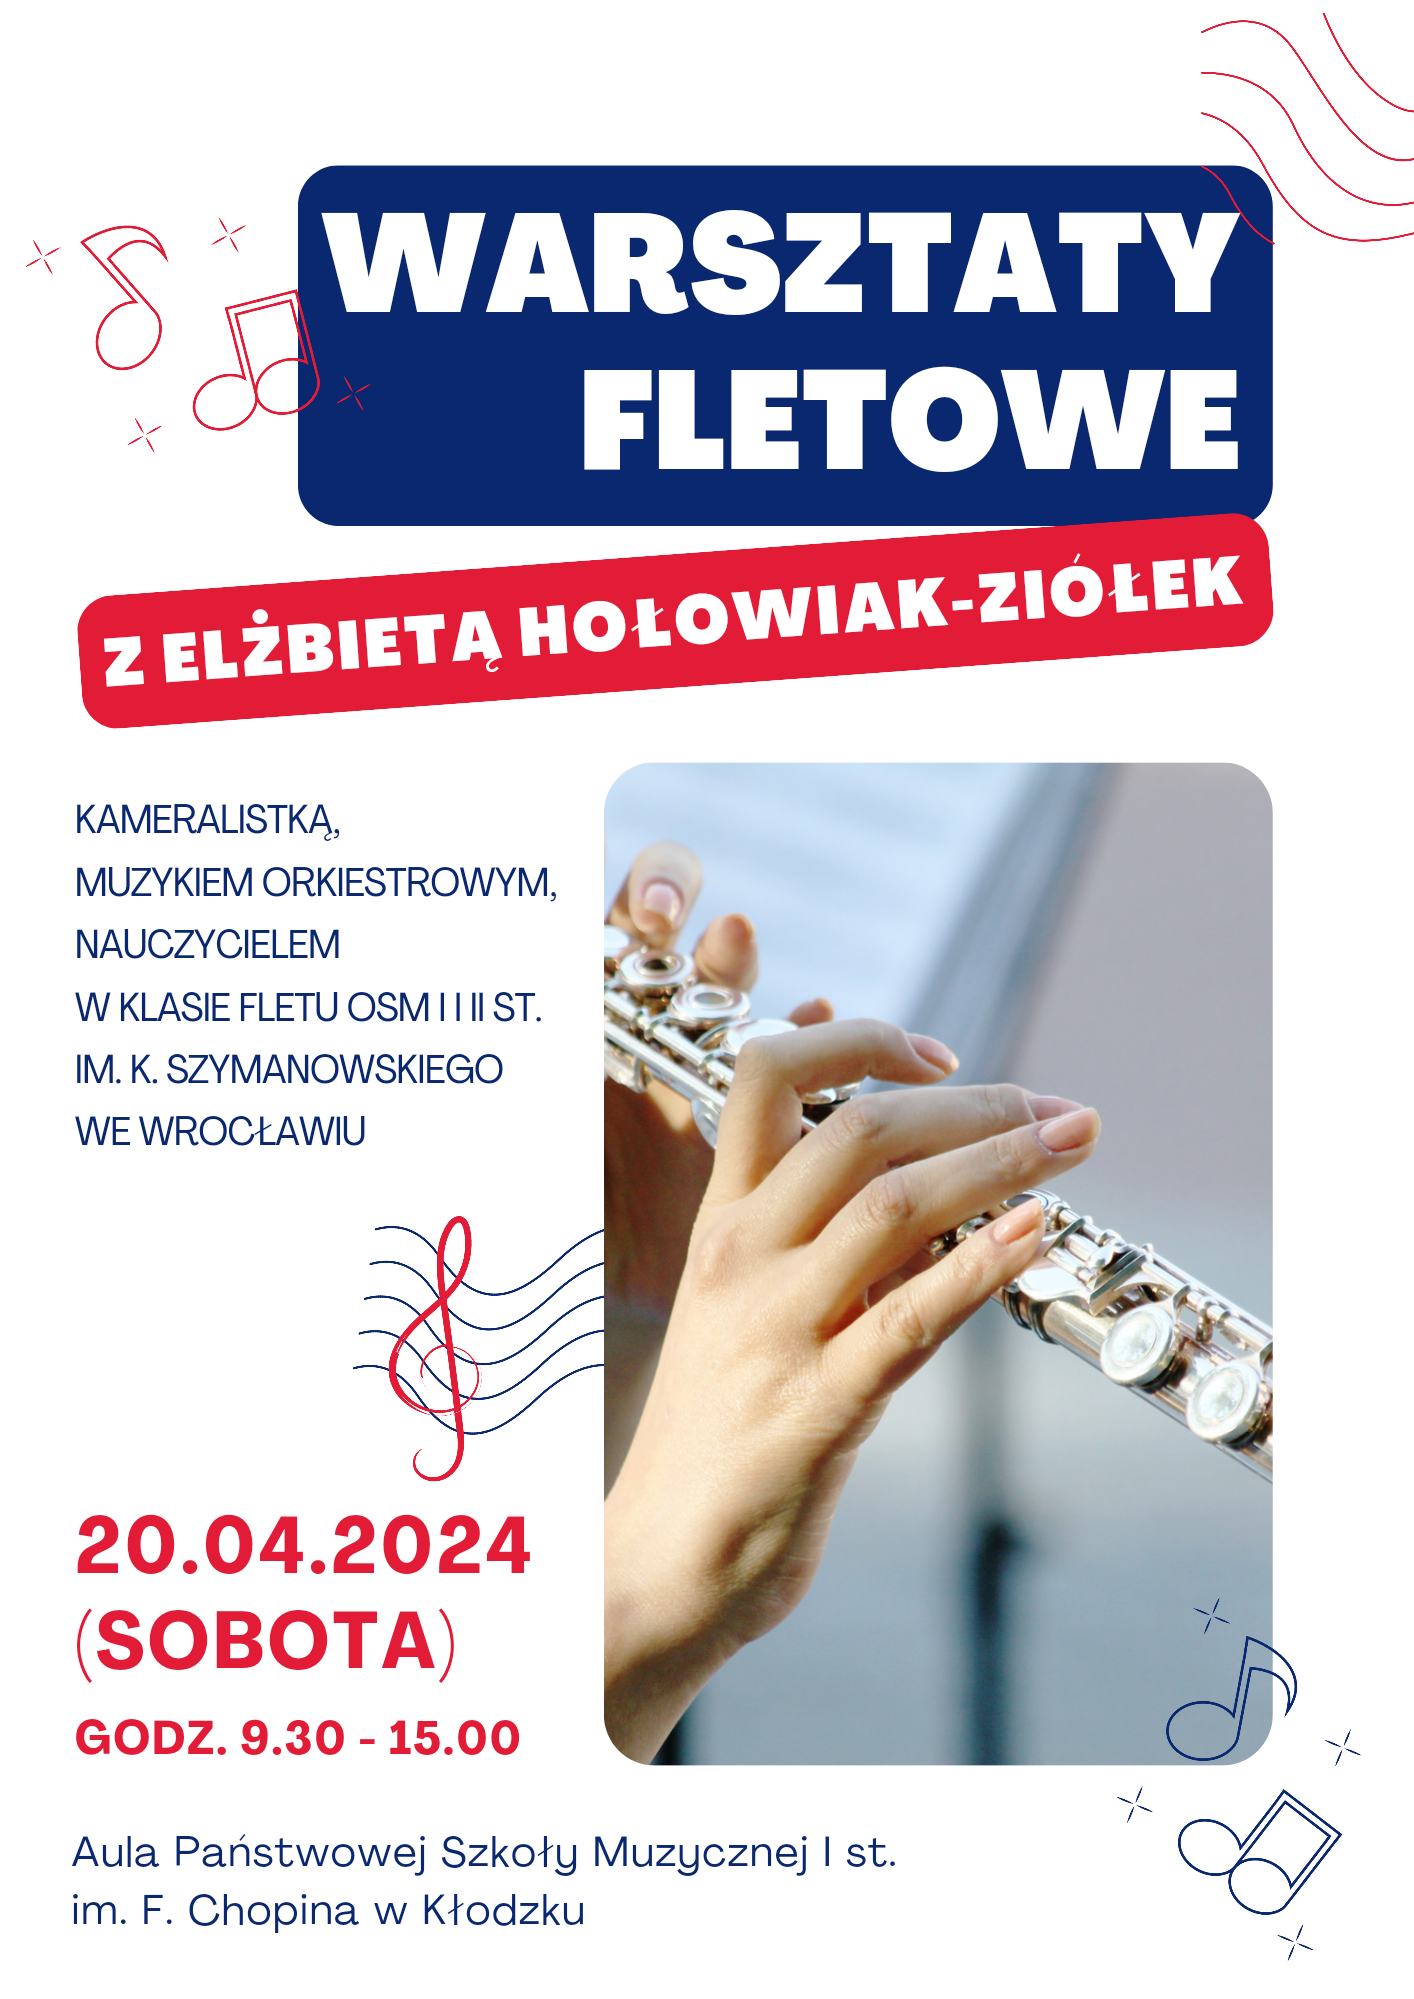 Plakat na białym tle z grafiką fletu oraz informacją tekstową dotyczącą warsztatów fletowych, które odbędą się 20 kwietnia 2024